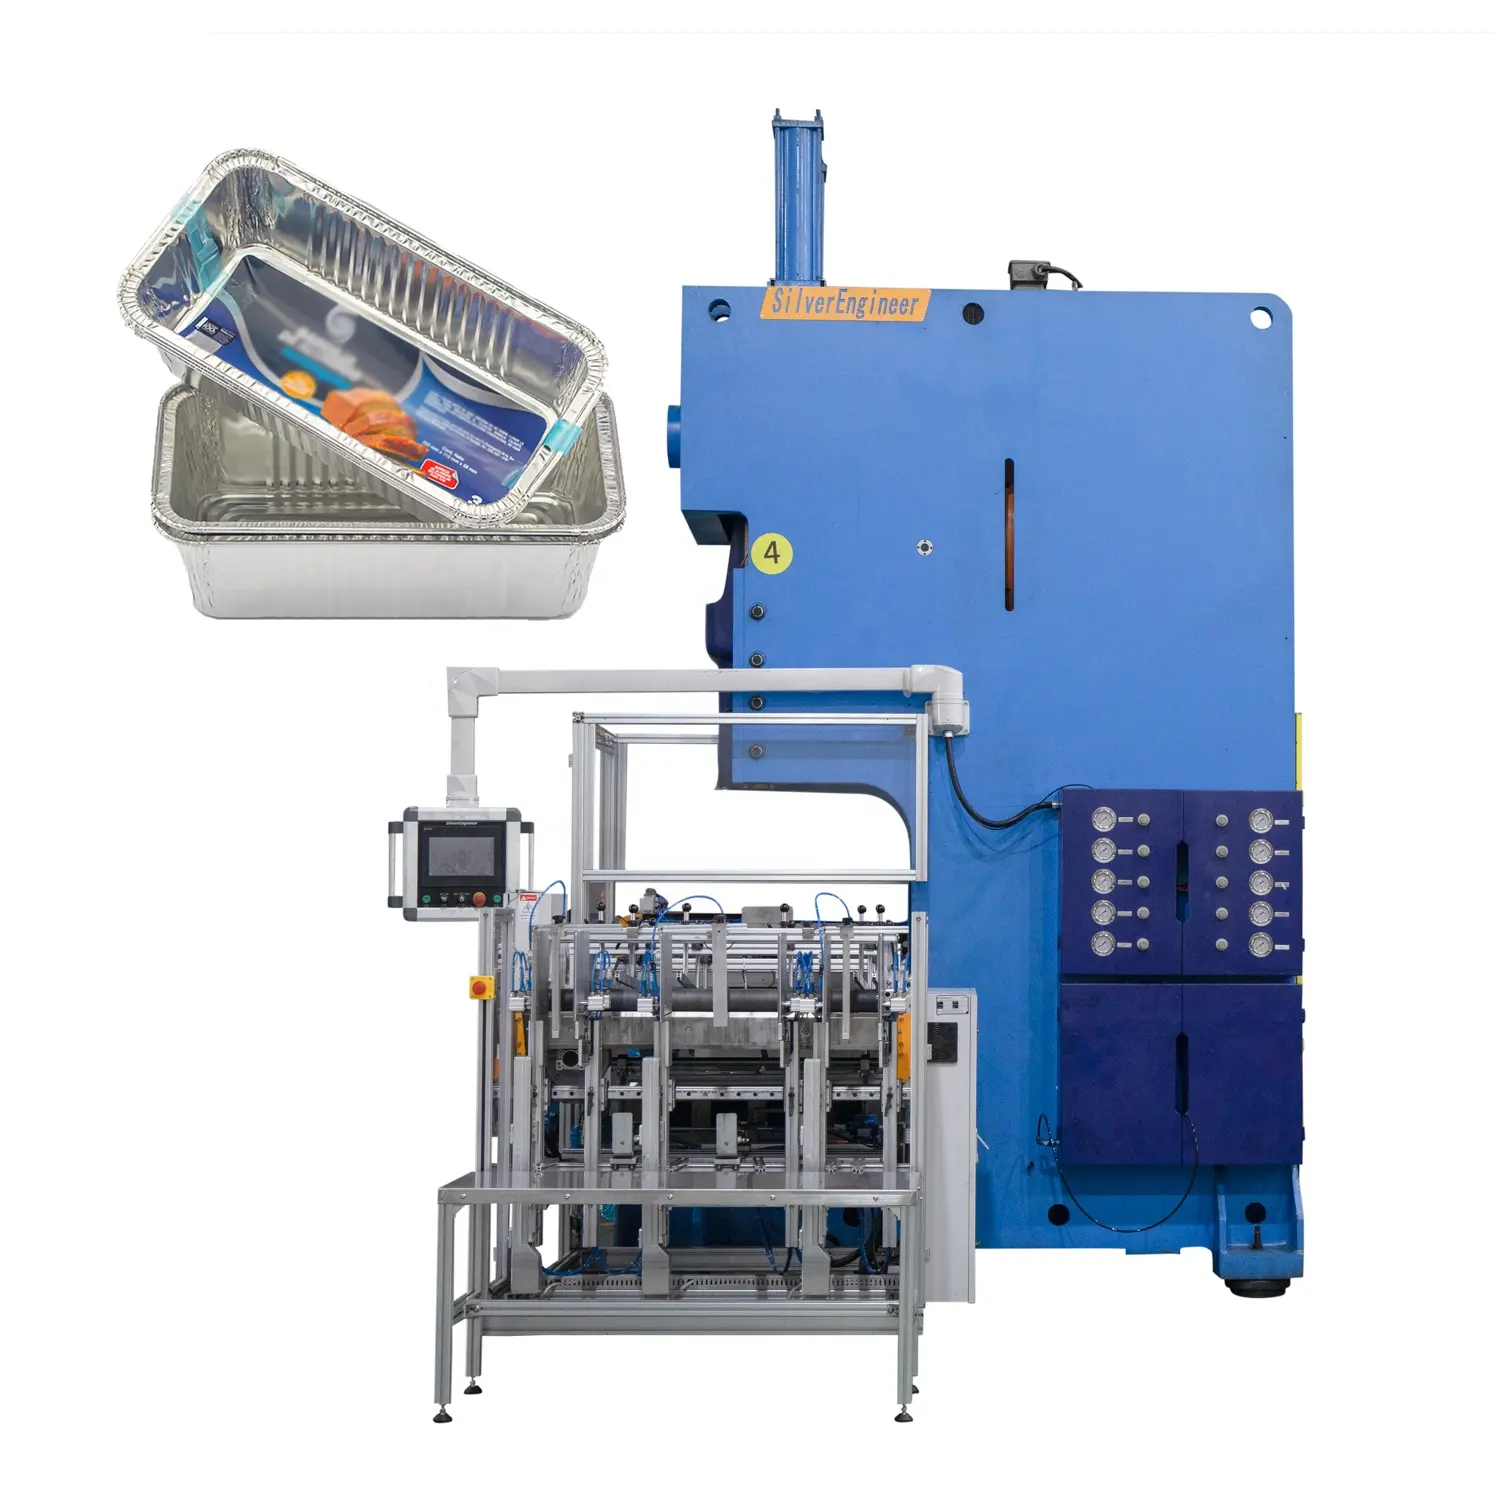 Machine de fabrication automatique de conteneur de papier d'aluminium 8011 de haute qualité et à bas prix avec empileur